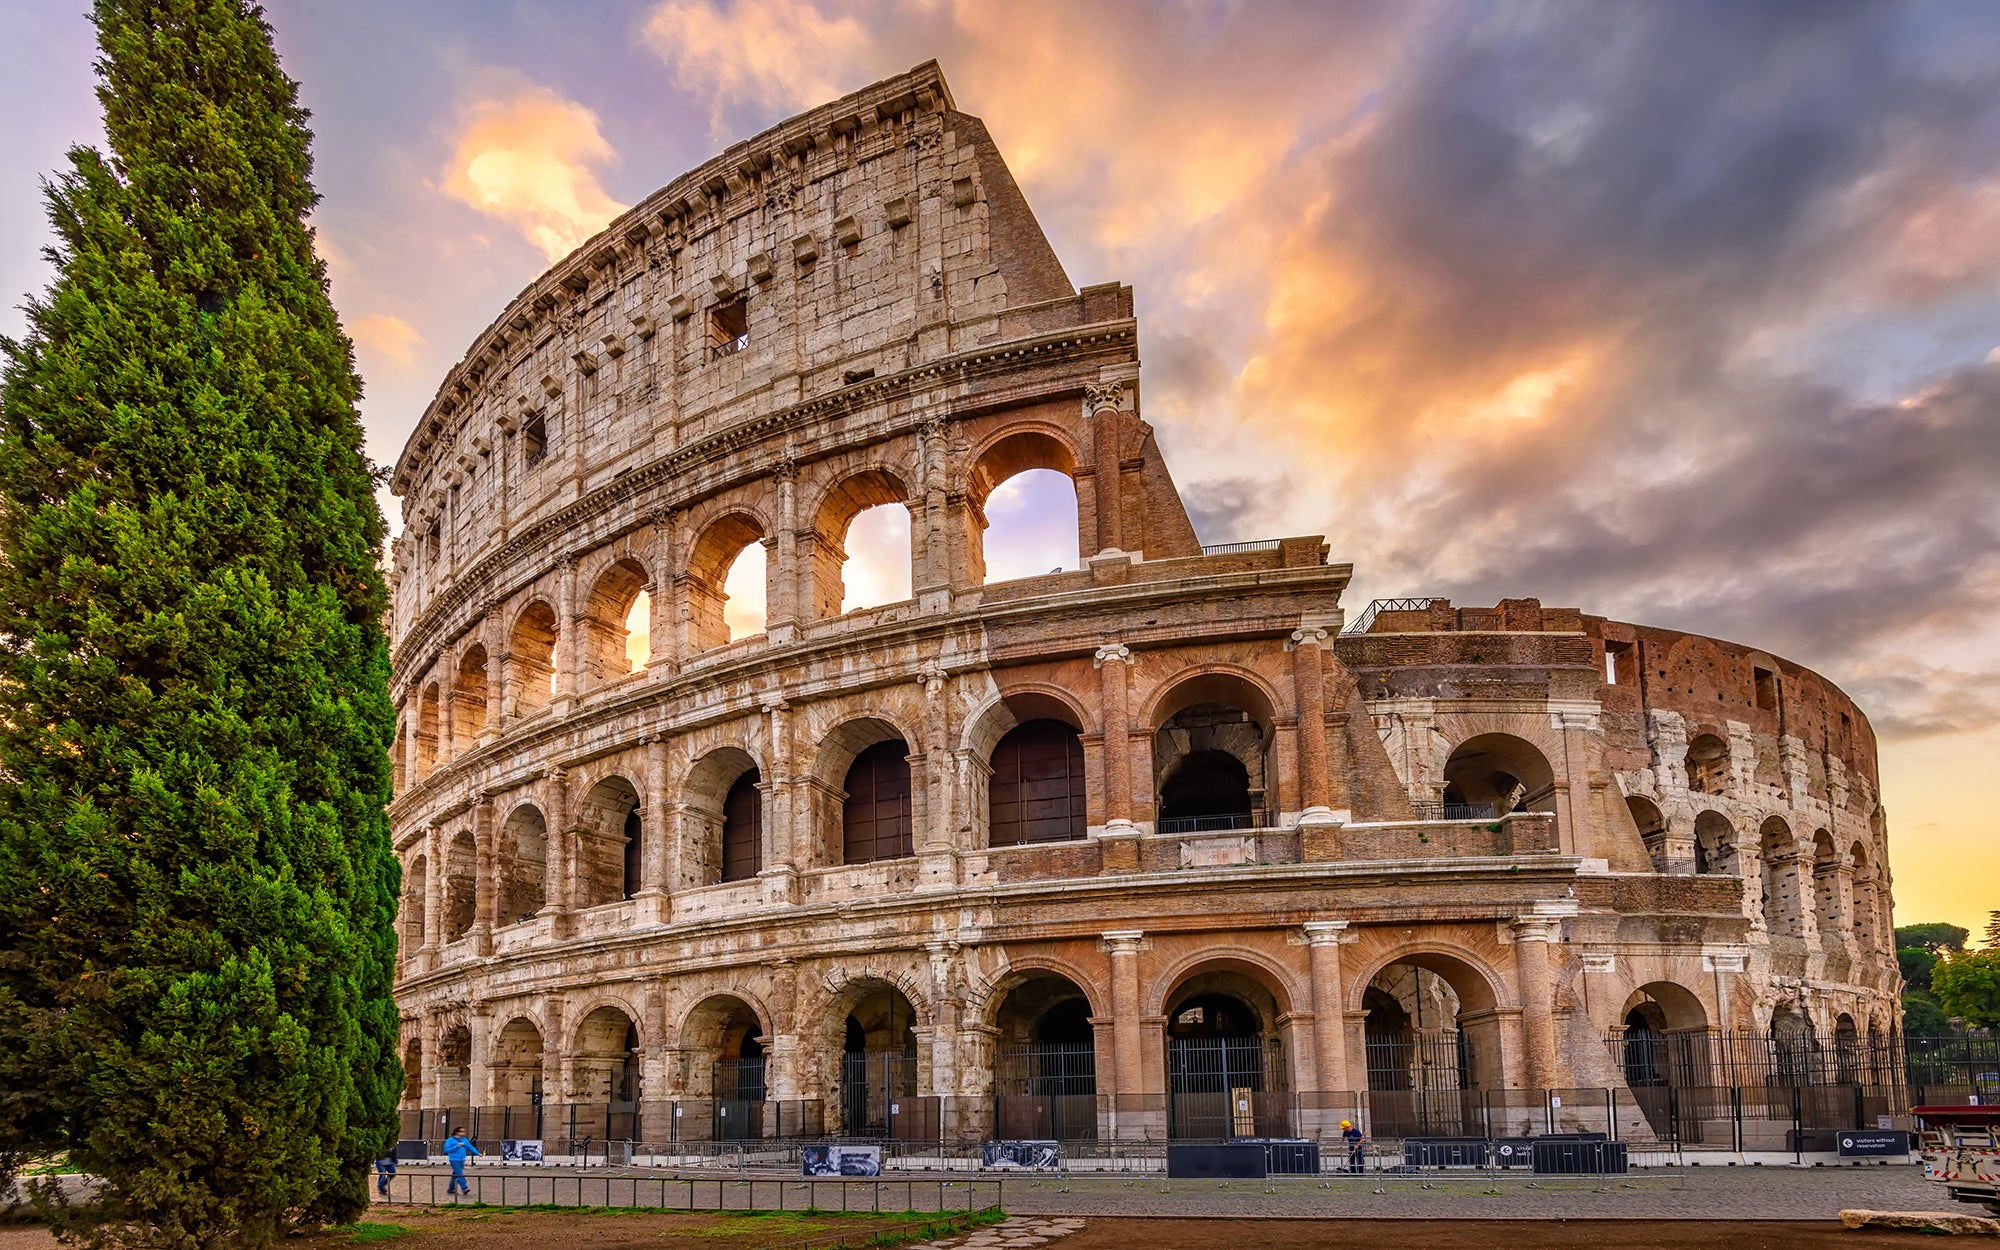 Het Colosseum II